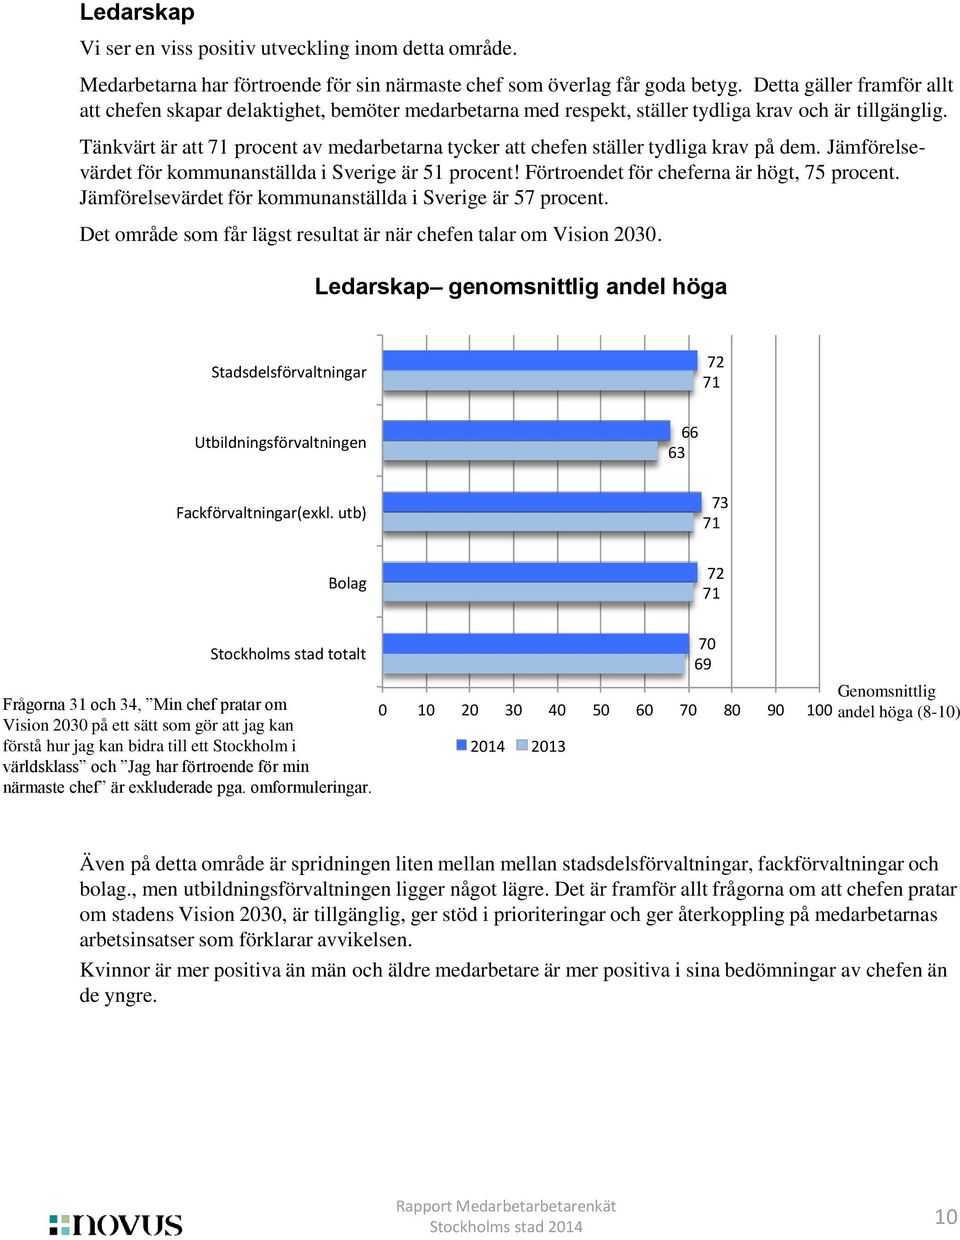 Tänkvärt är att 71 procent av medarbetarna tycker att chefen ställer tydliga krav på dem. Jämförelsevärdet för kommunanställda i Sverige är 51 procent! Förtroendet för cheferna är högt, 75 procent.